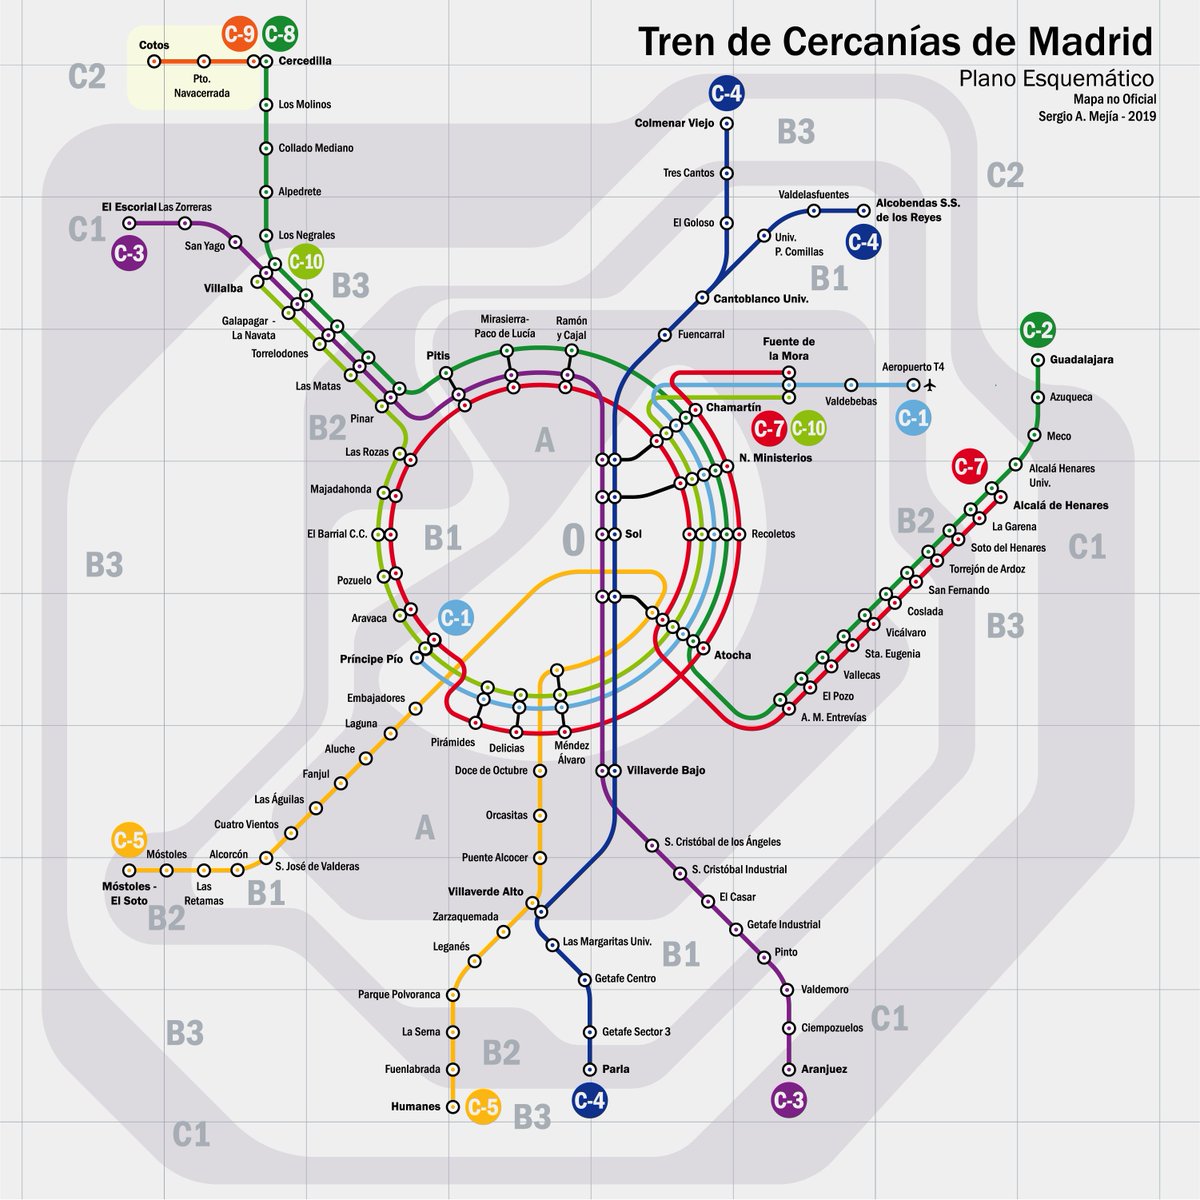 Acabo de encontrarme este plano para Cercanías Madrid que diseñó un usuario de Reddit (no le encuentro en Twitter) y me encanta su claridad.